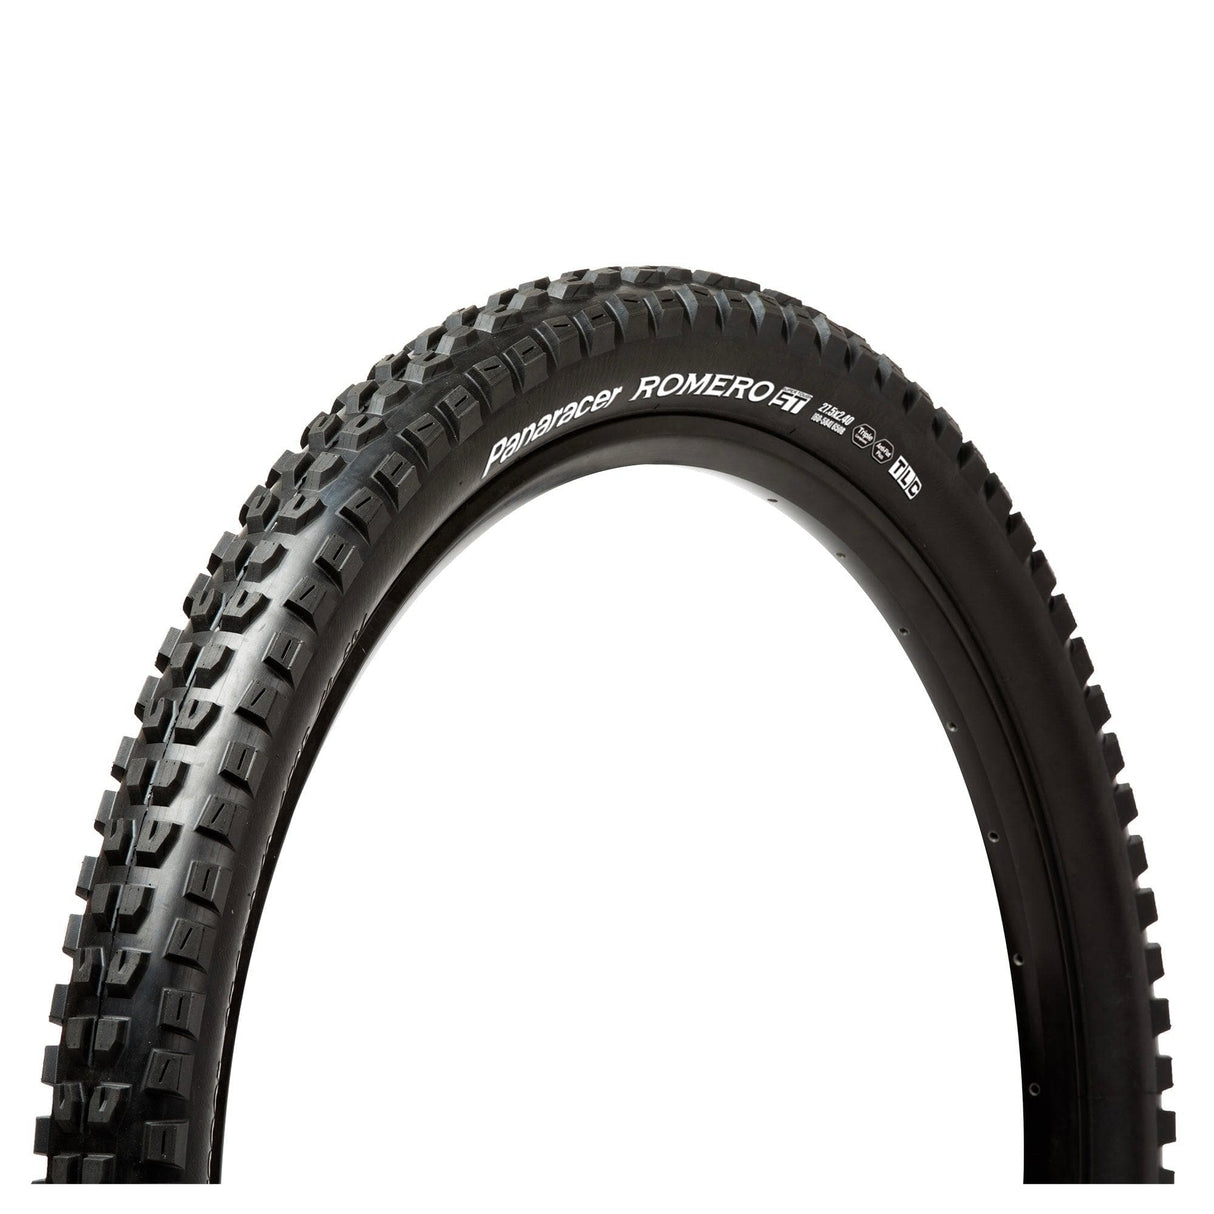 Panaracer Romero St Tubeless Compatible Folding Tyre: Black/Black 27.5X2.60"